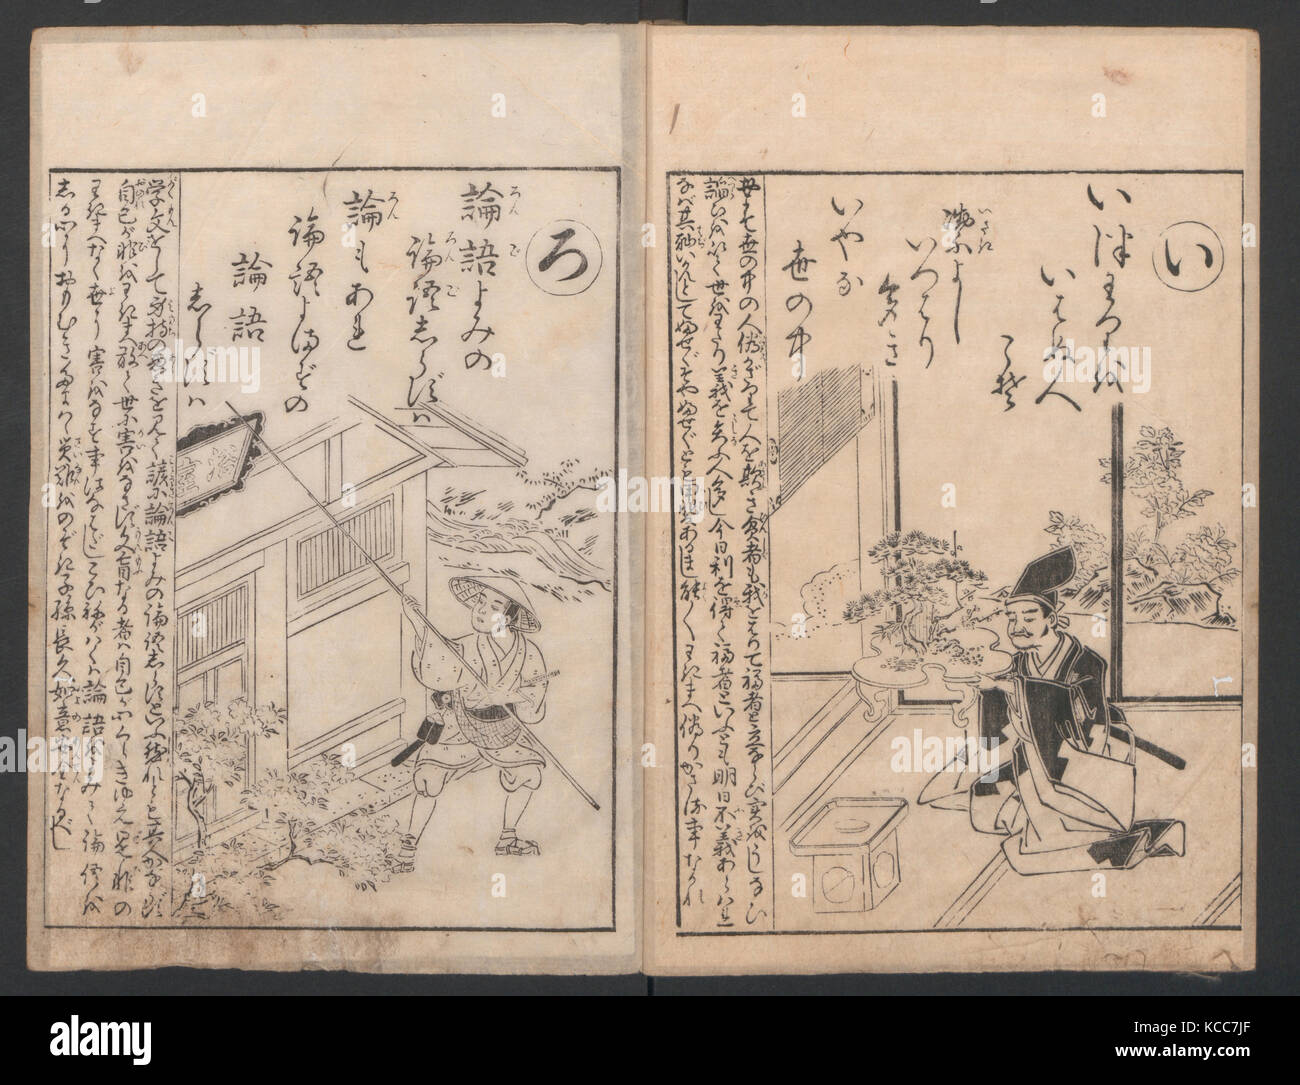 Cuarenta y ocho poemas instructivo en orden alfabético, Suzuki Harunobu, 1788 Foto de stock